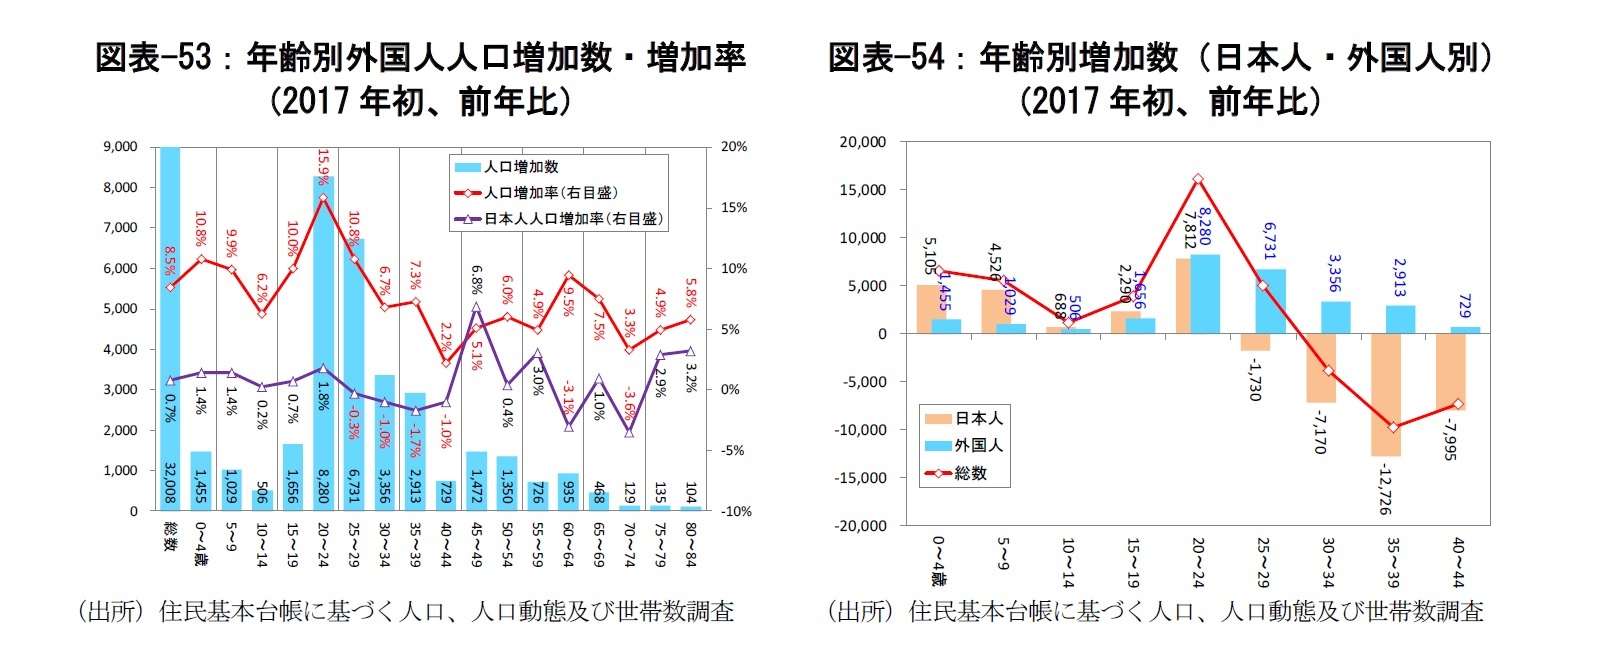 図表-53：年齢別外国人人口増加数・増加率（2017年初、前年比）/図表-54：年齢別増加数（日本人・外国人別）（2017年初、前年比）